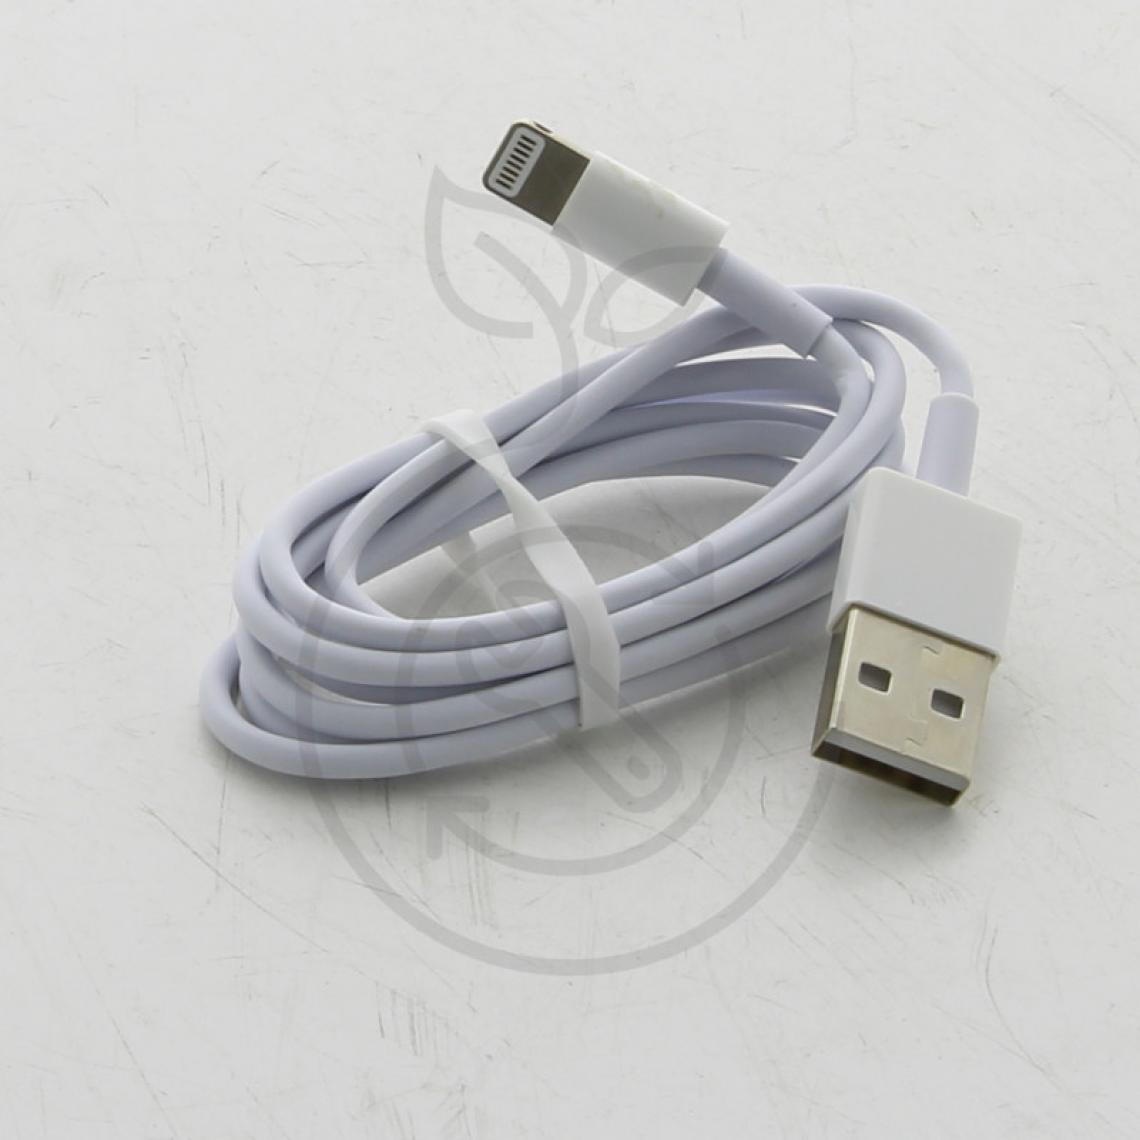 Dlh - Cable USB vers APPLE Lightning , blanc, longueur 1M DY-TU1704W pour Smartphone APPLE - Accessoire lavage, séchage